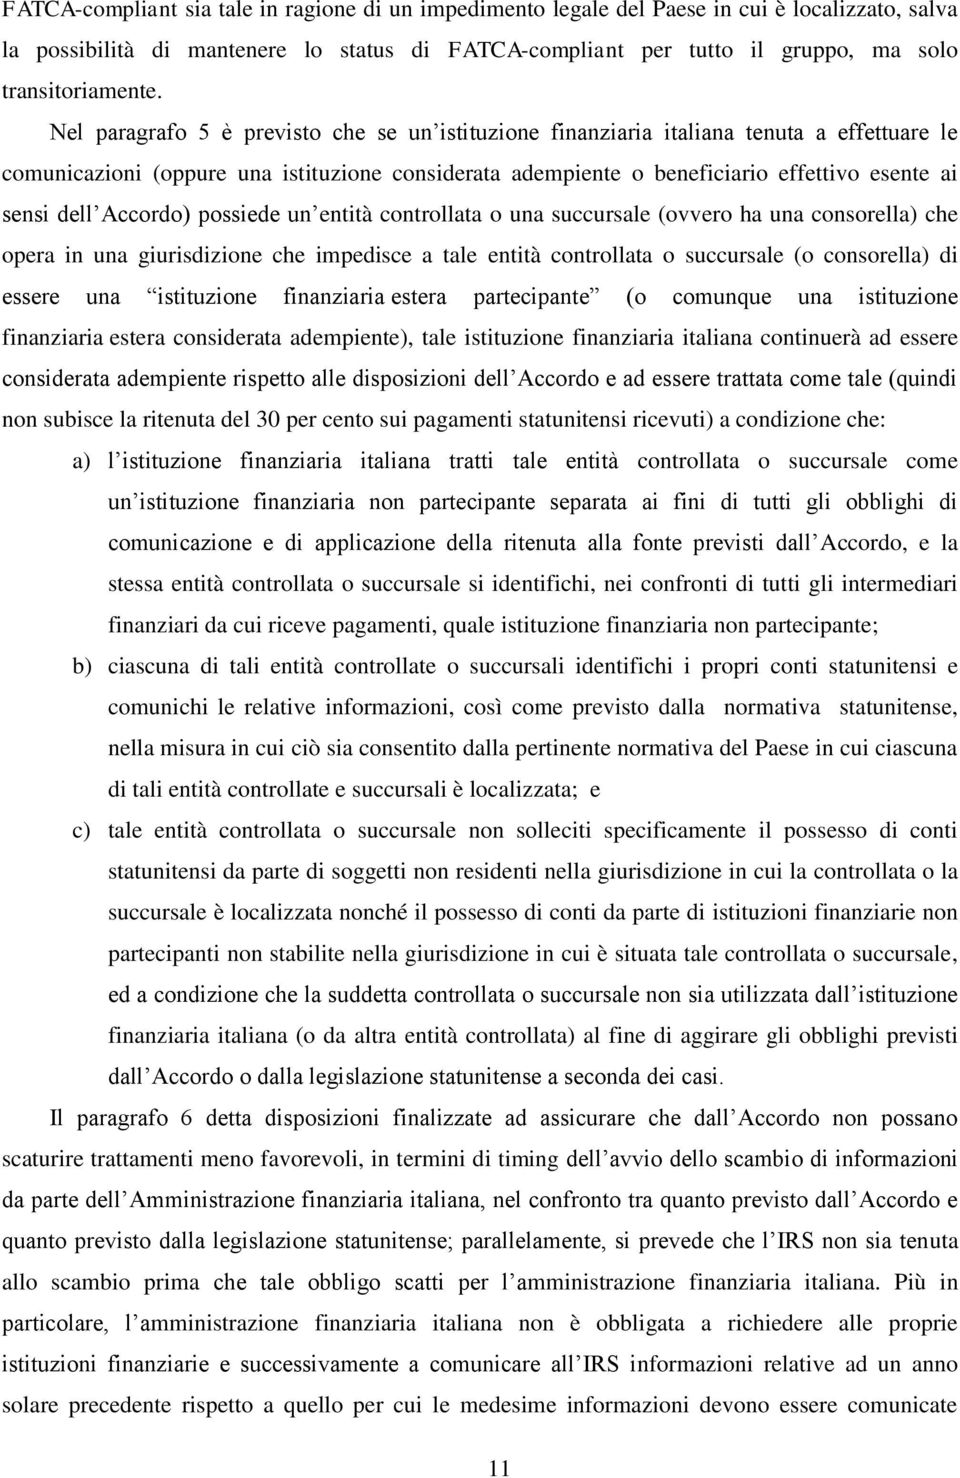 Nel paragrafo 5 è previsto che se un istituzione finanziaria italiana tenuta a effettuare le comunicazioni (oppure una istituzione considerata adempiente o beneficiario effettivo esente ai sensi dell